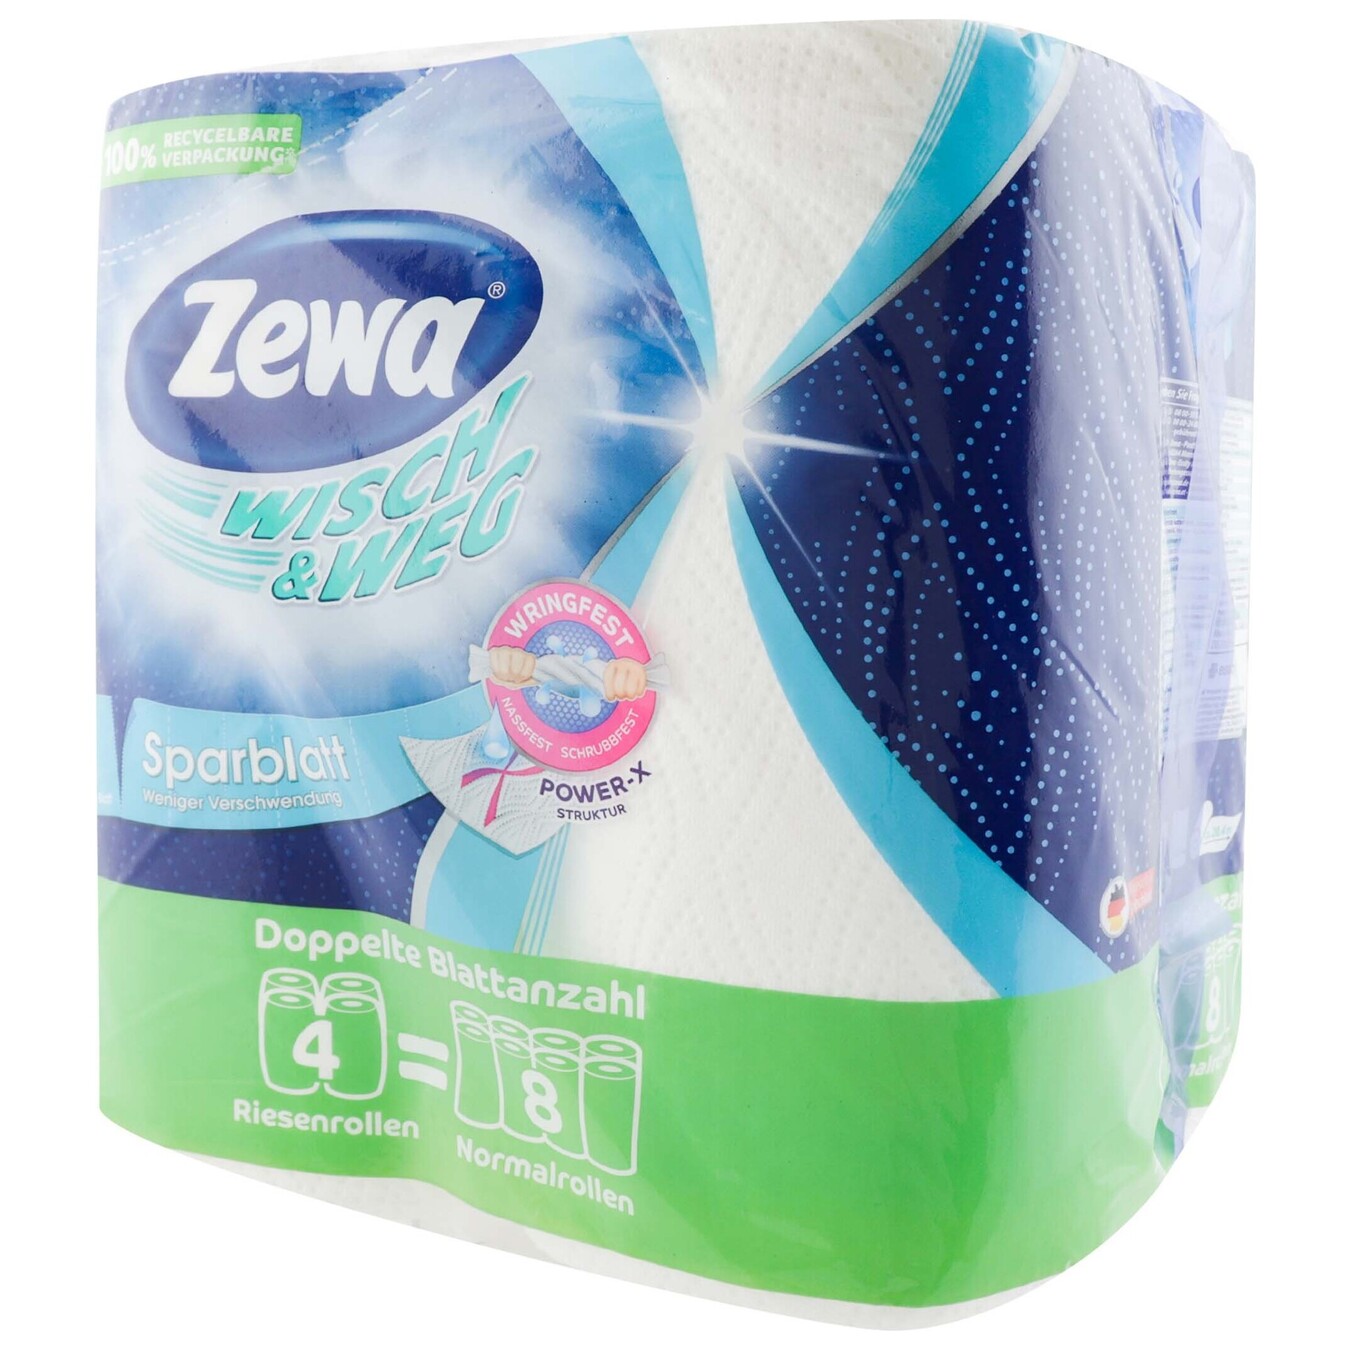 Paper towels Zewa Wisch&Weg 4pcs 2